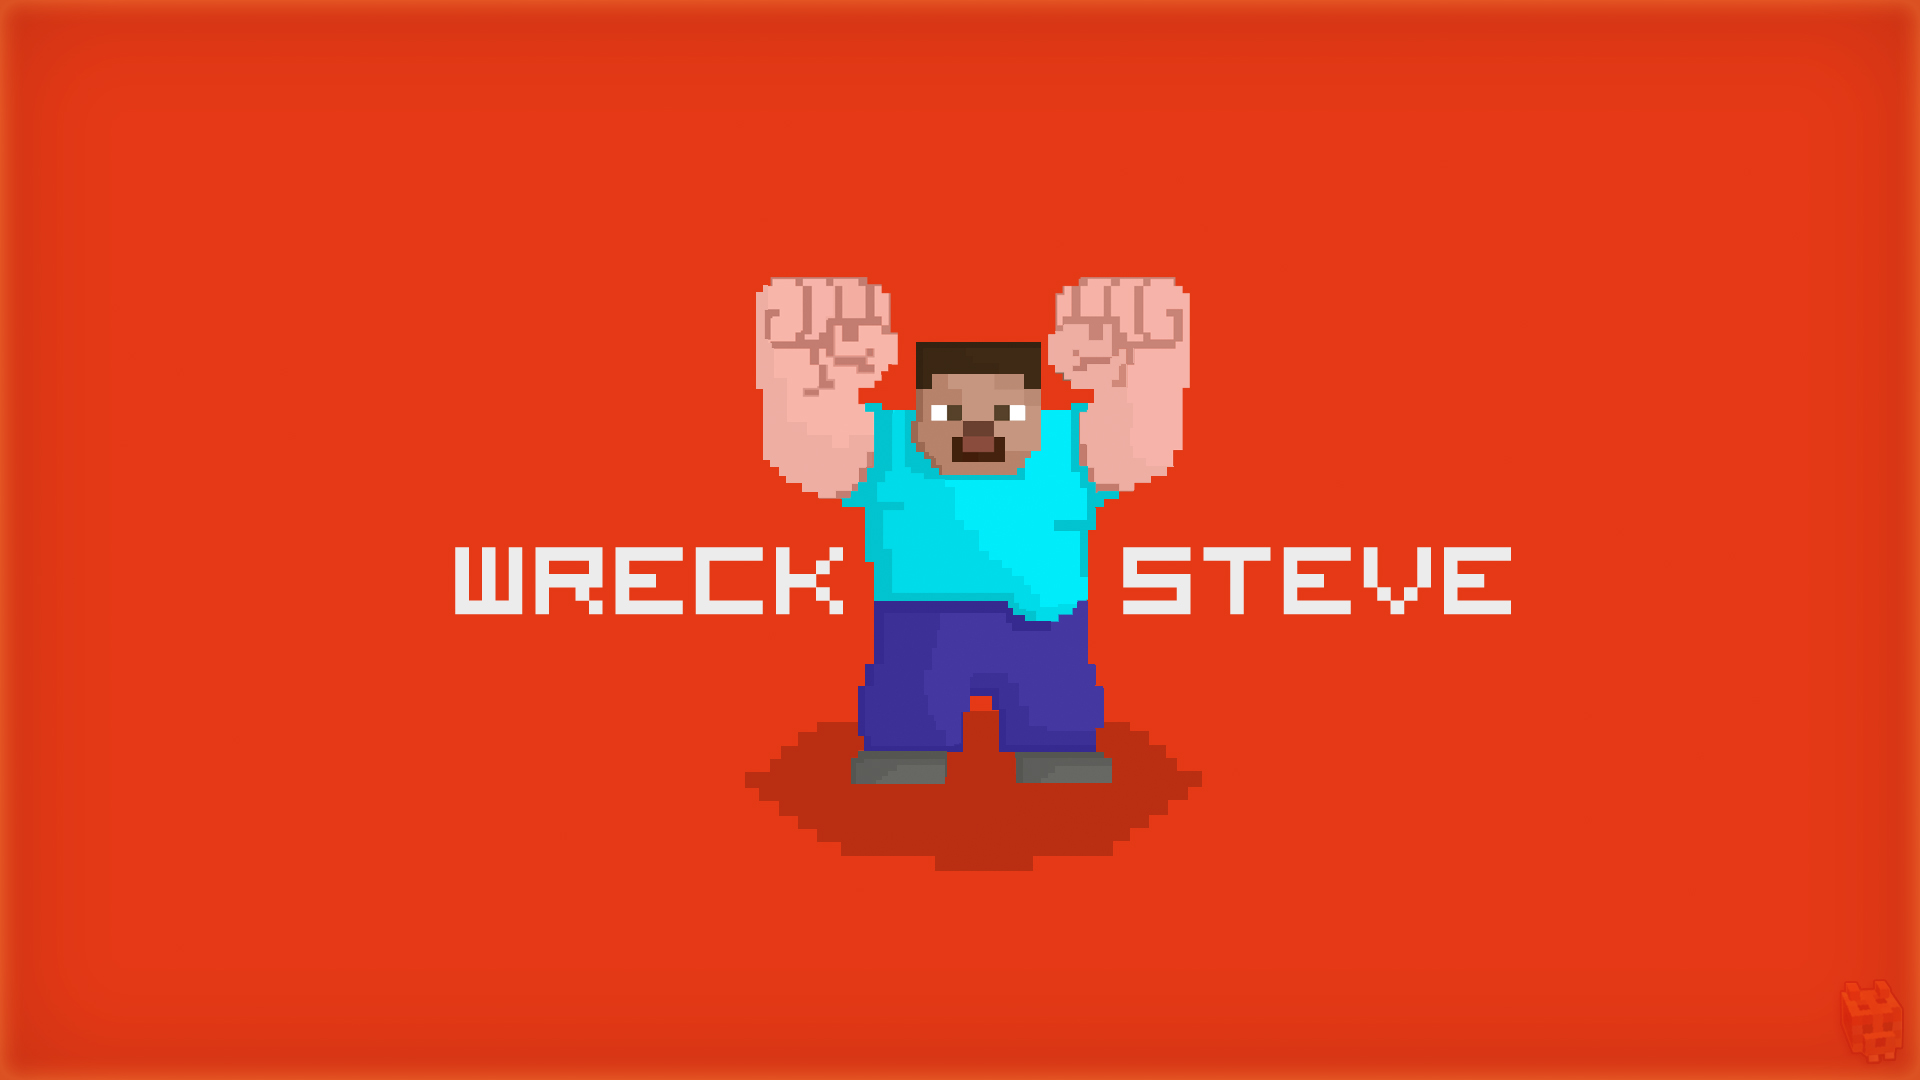 Wreck It Steve Minecraft Wallpaper By Dentvanboo